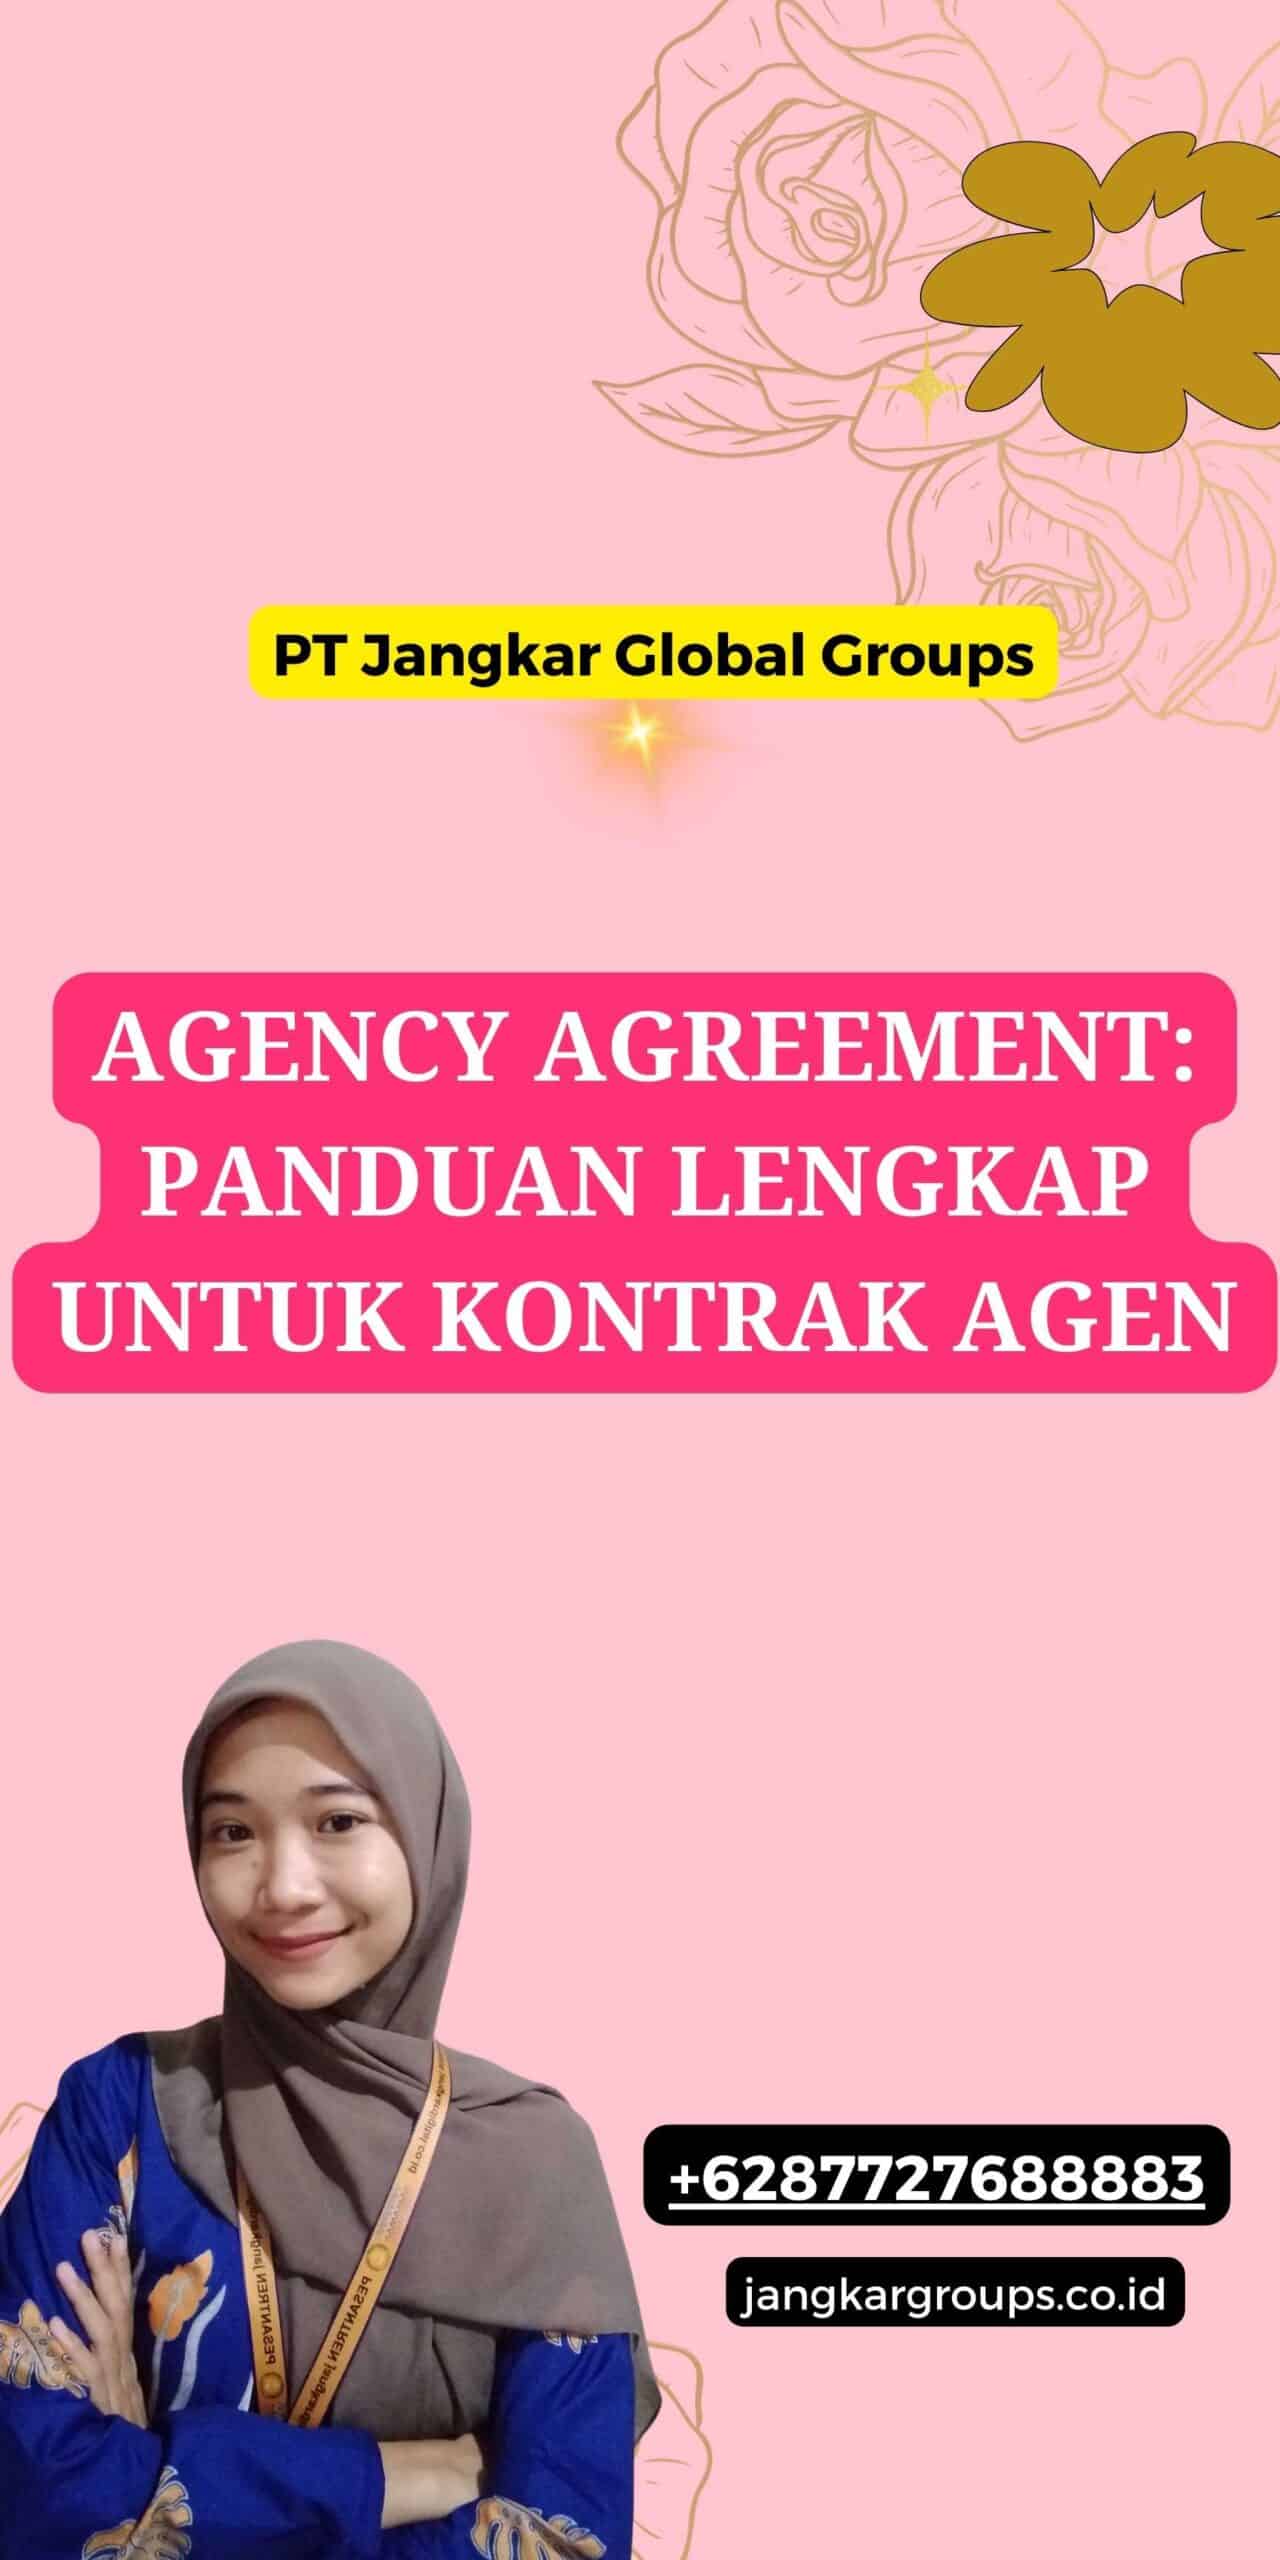 Agency Agreement: Panduan Lengkap untuk Kontrak Agen